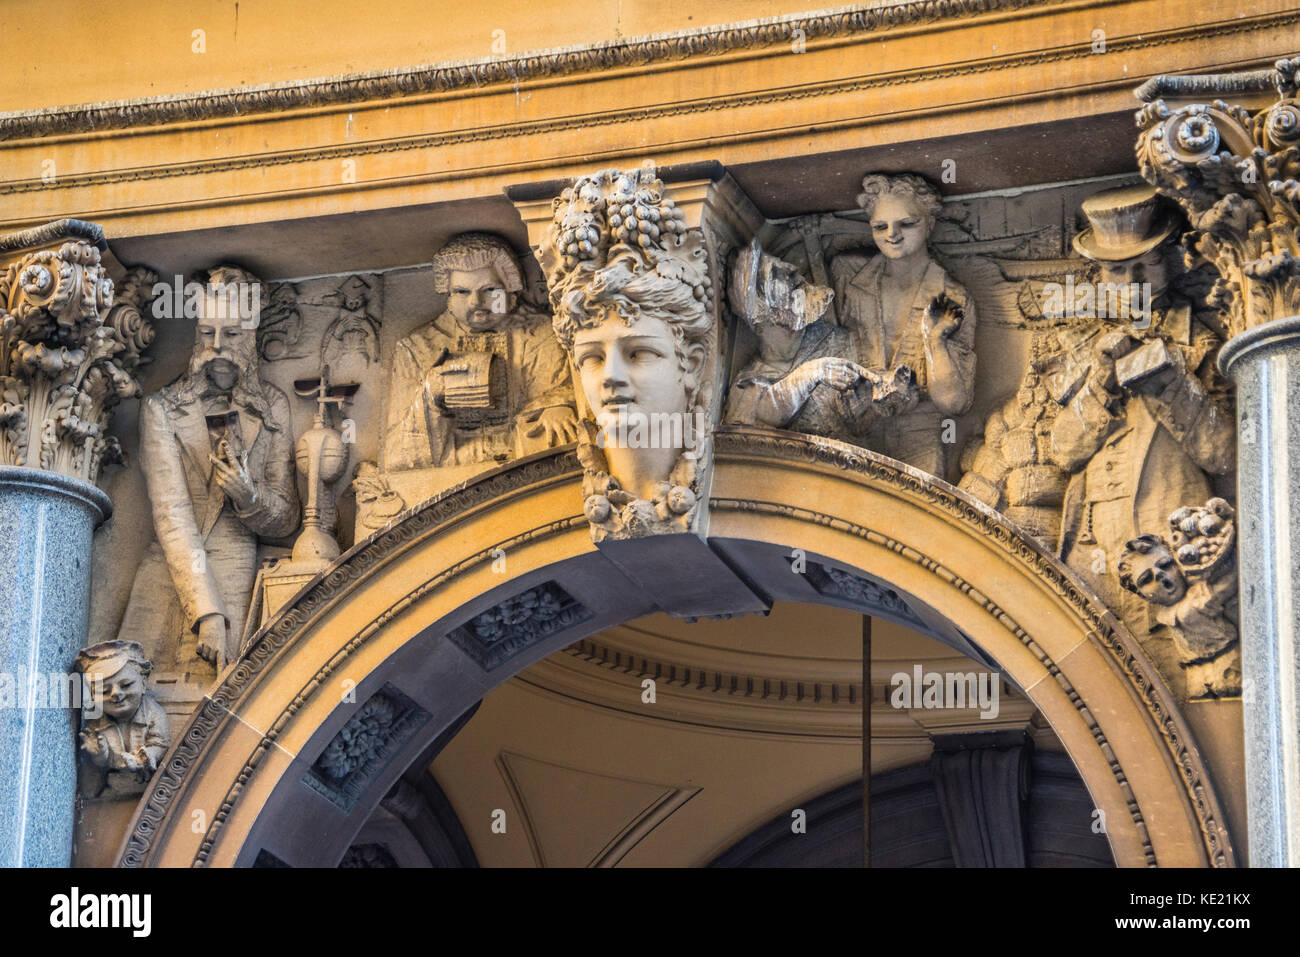 Australia, Nuovo Galles del Sud, Sydney, sculture contemporanee di Sydney sione ritiene dallo scultore Tomaso sani in un spandrel del Pitt Street arcade di th Foto Stock